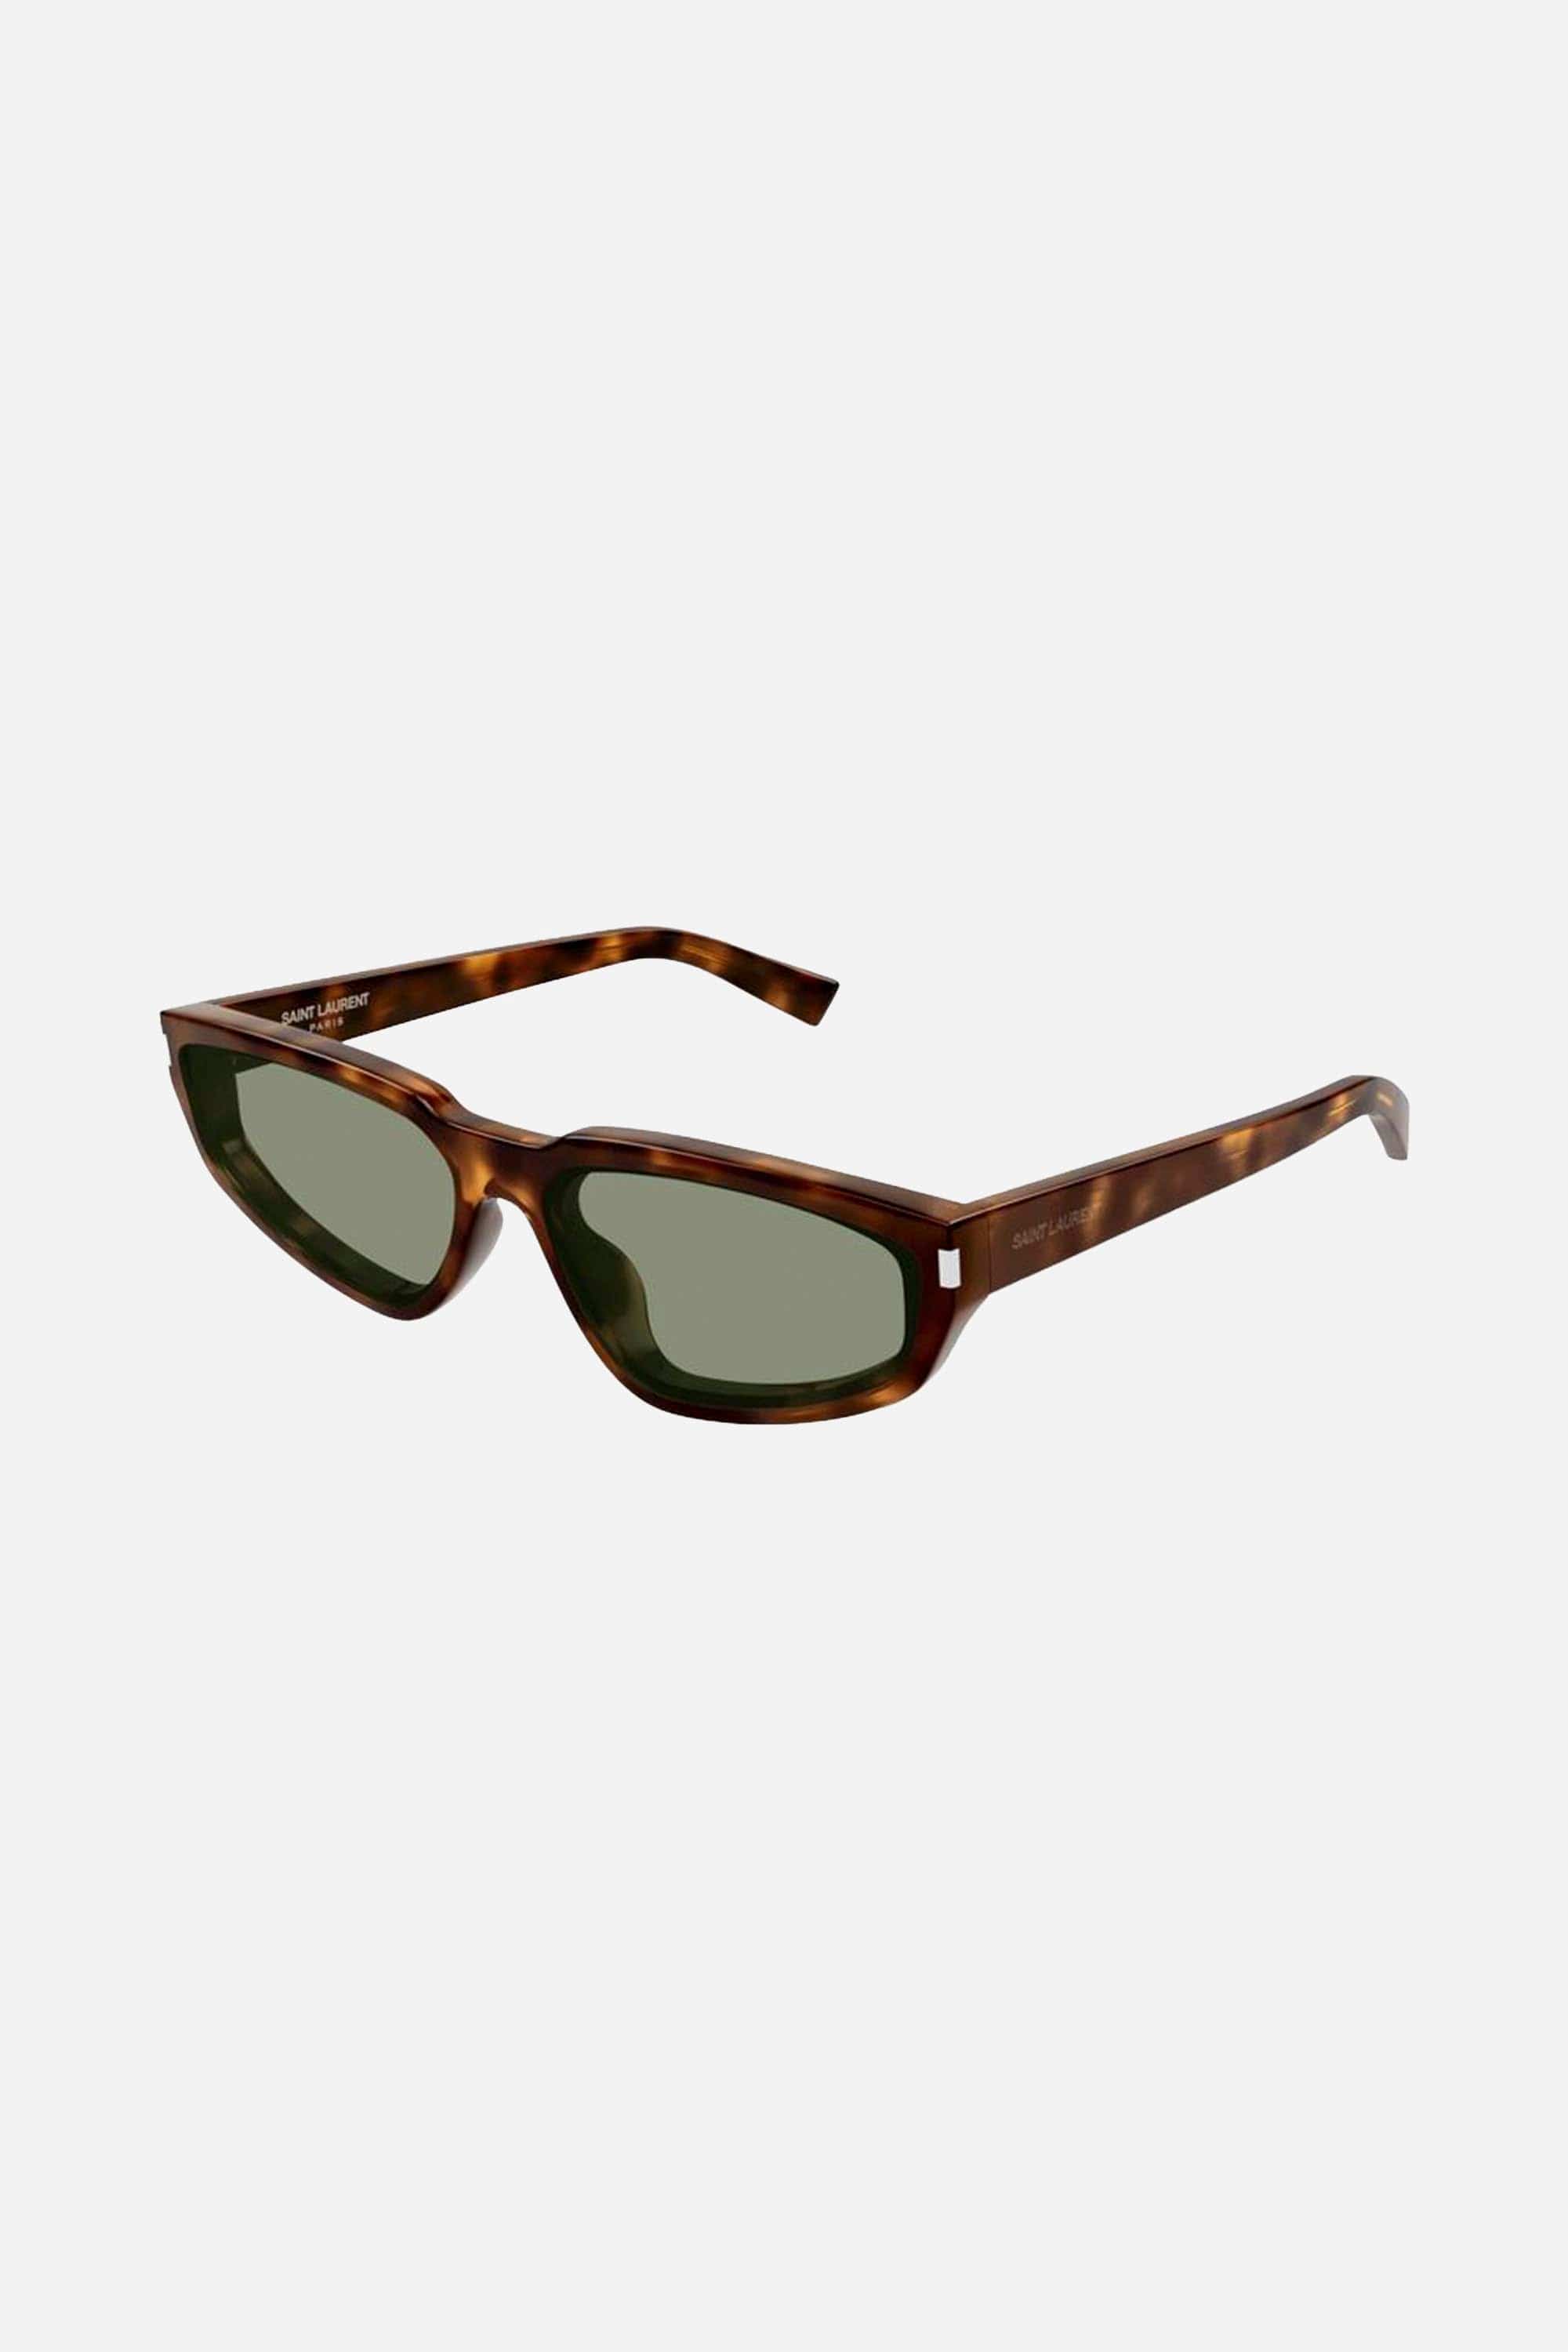 Saint Laurent SL 634 NOVA oval havana sunglasses - Eyewear Club